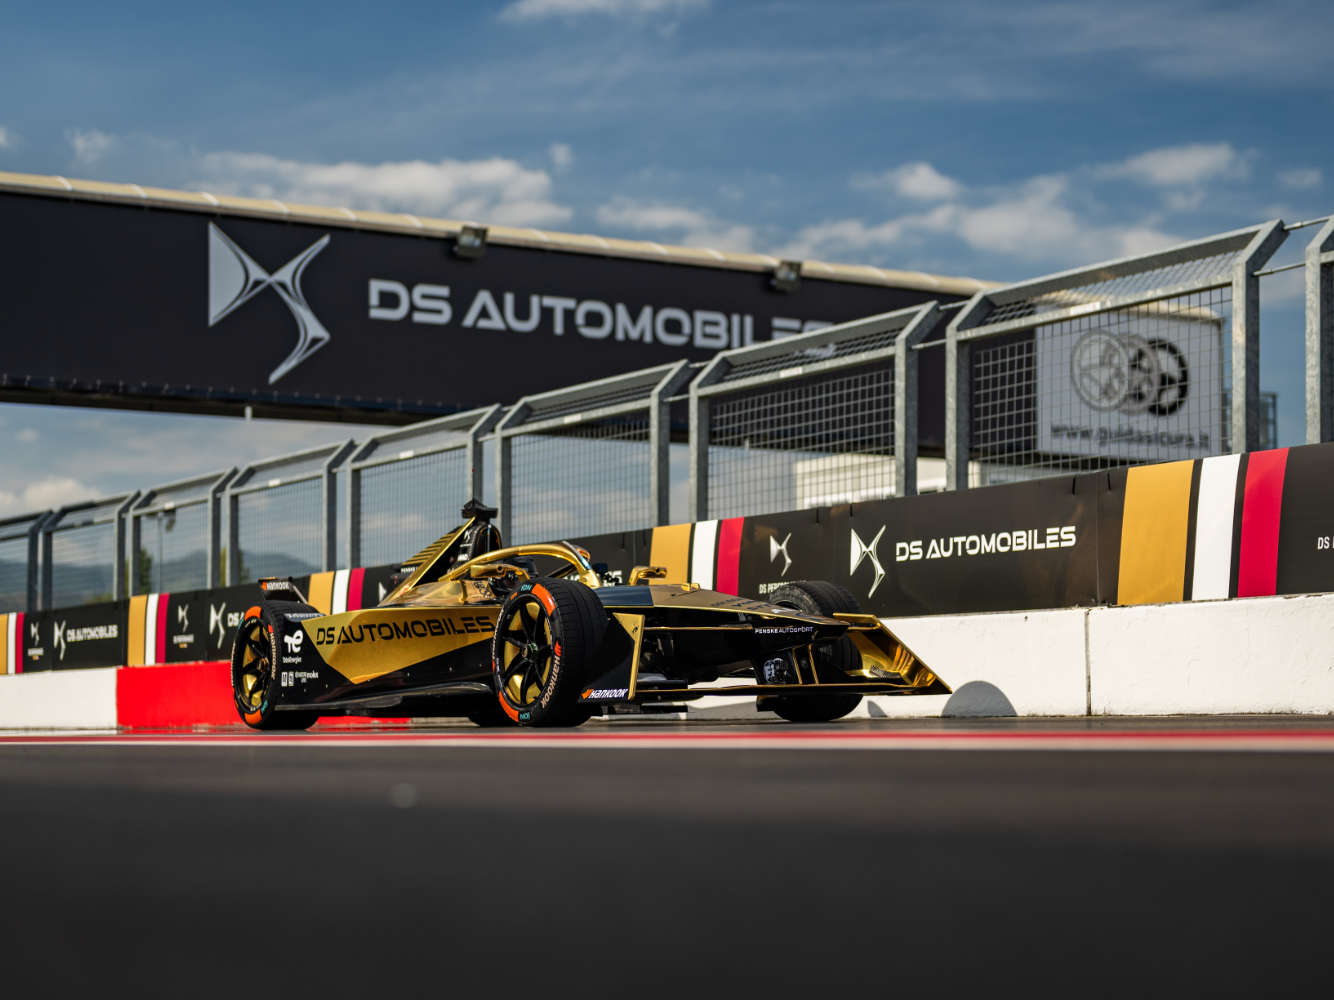 DS Automobiles починає 10-й сезон Formula Е та представляє нову ліврею для DS E-TENSE FE23!